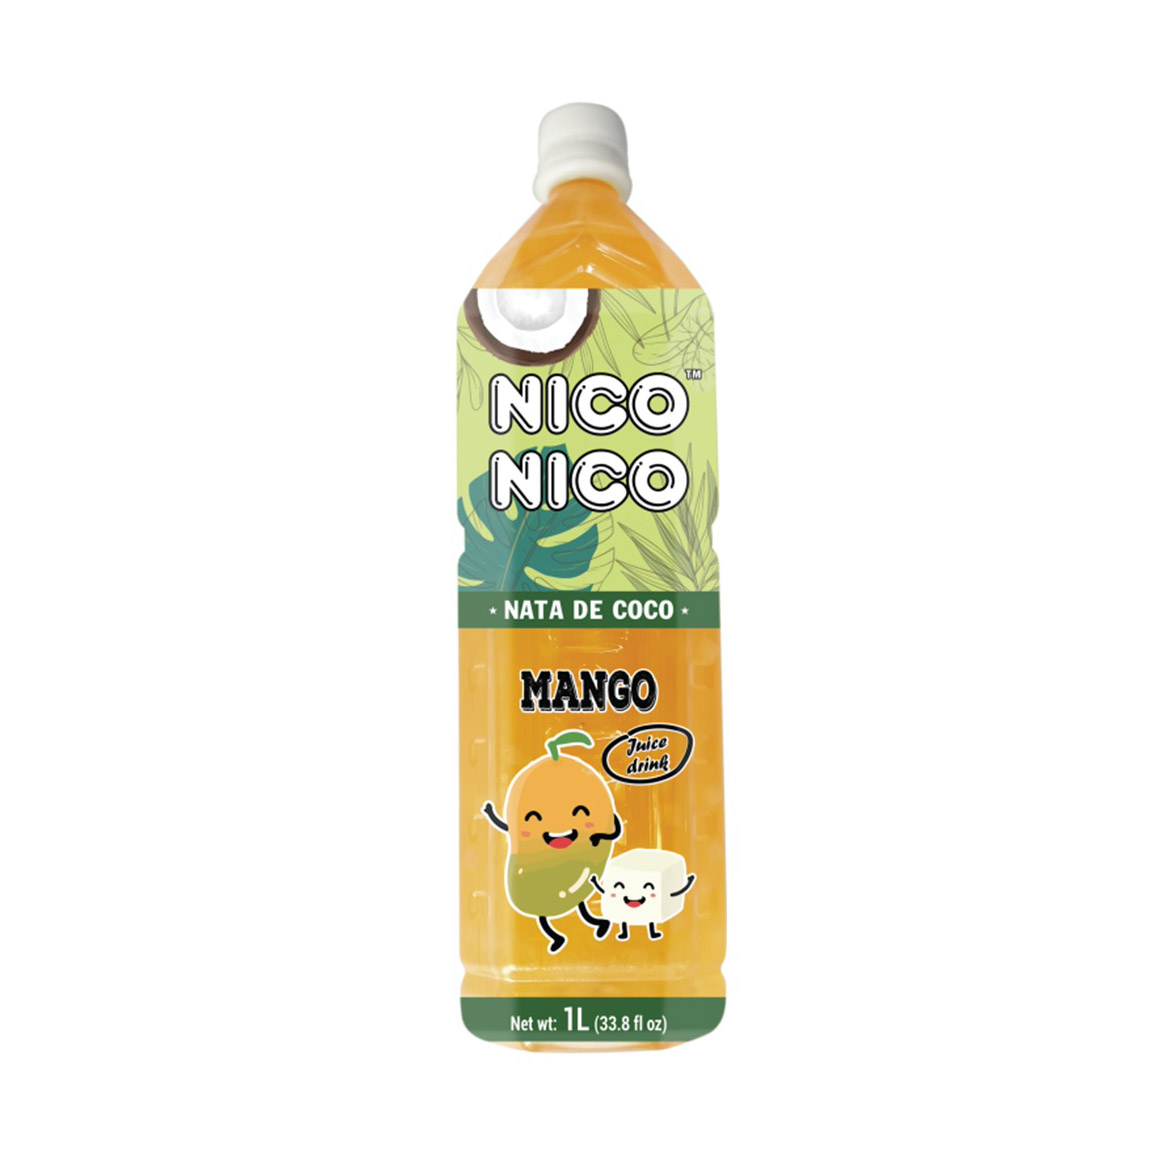 NICONICO NATADE COCO MANGO DRINK 6/33.8Z